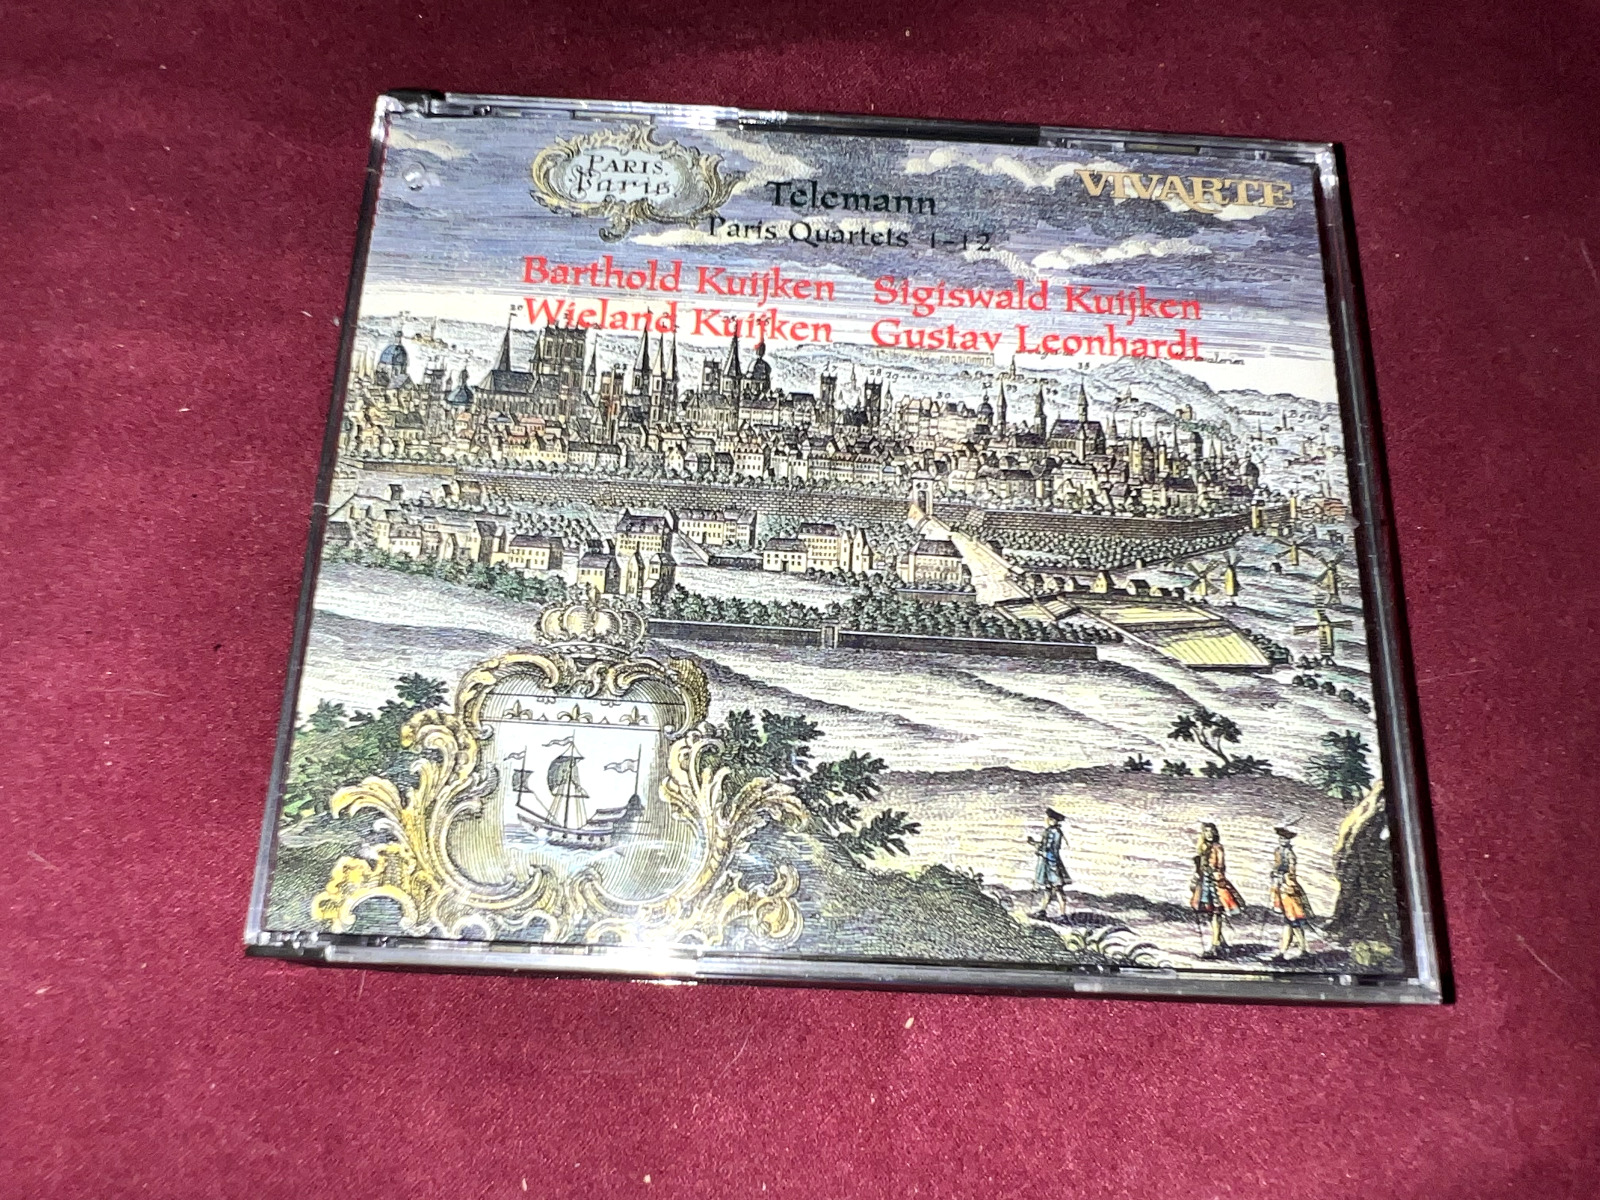 Georg Phillipp Telemann-Paris Quartets 1-12(3 CDs +Booklet Set)1997 hj12